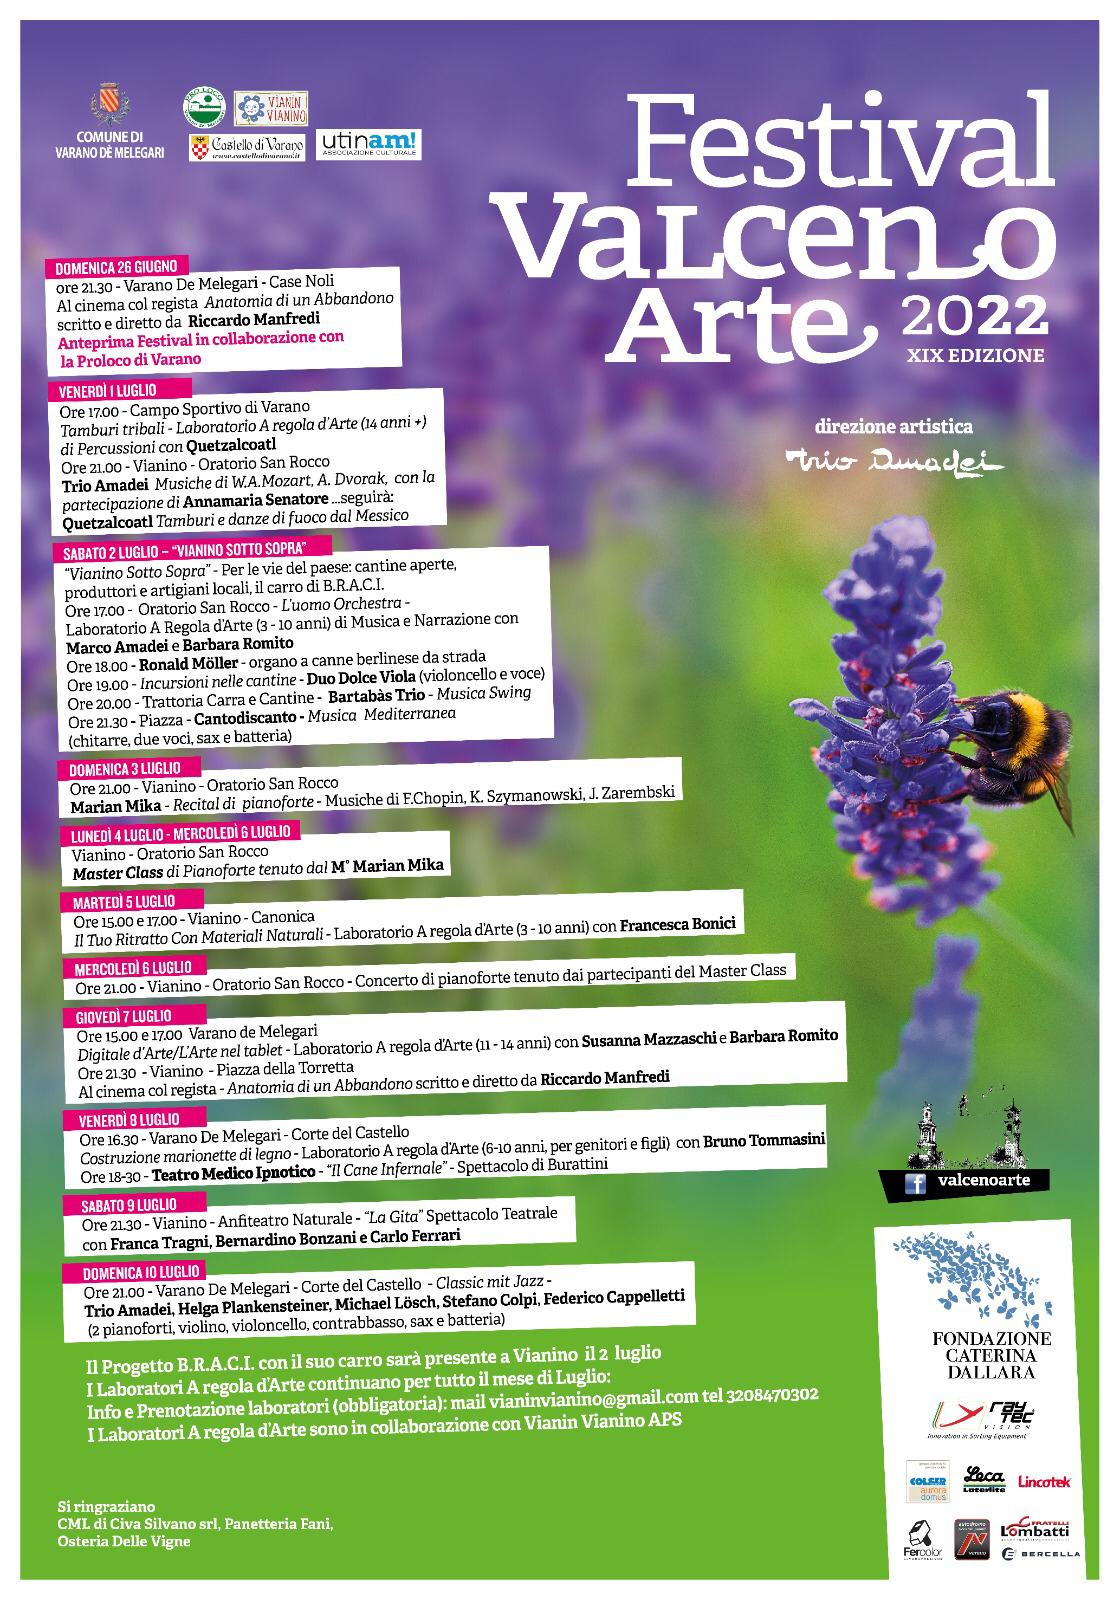 Festival Valceno Arte: Piano Masterclass